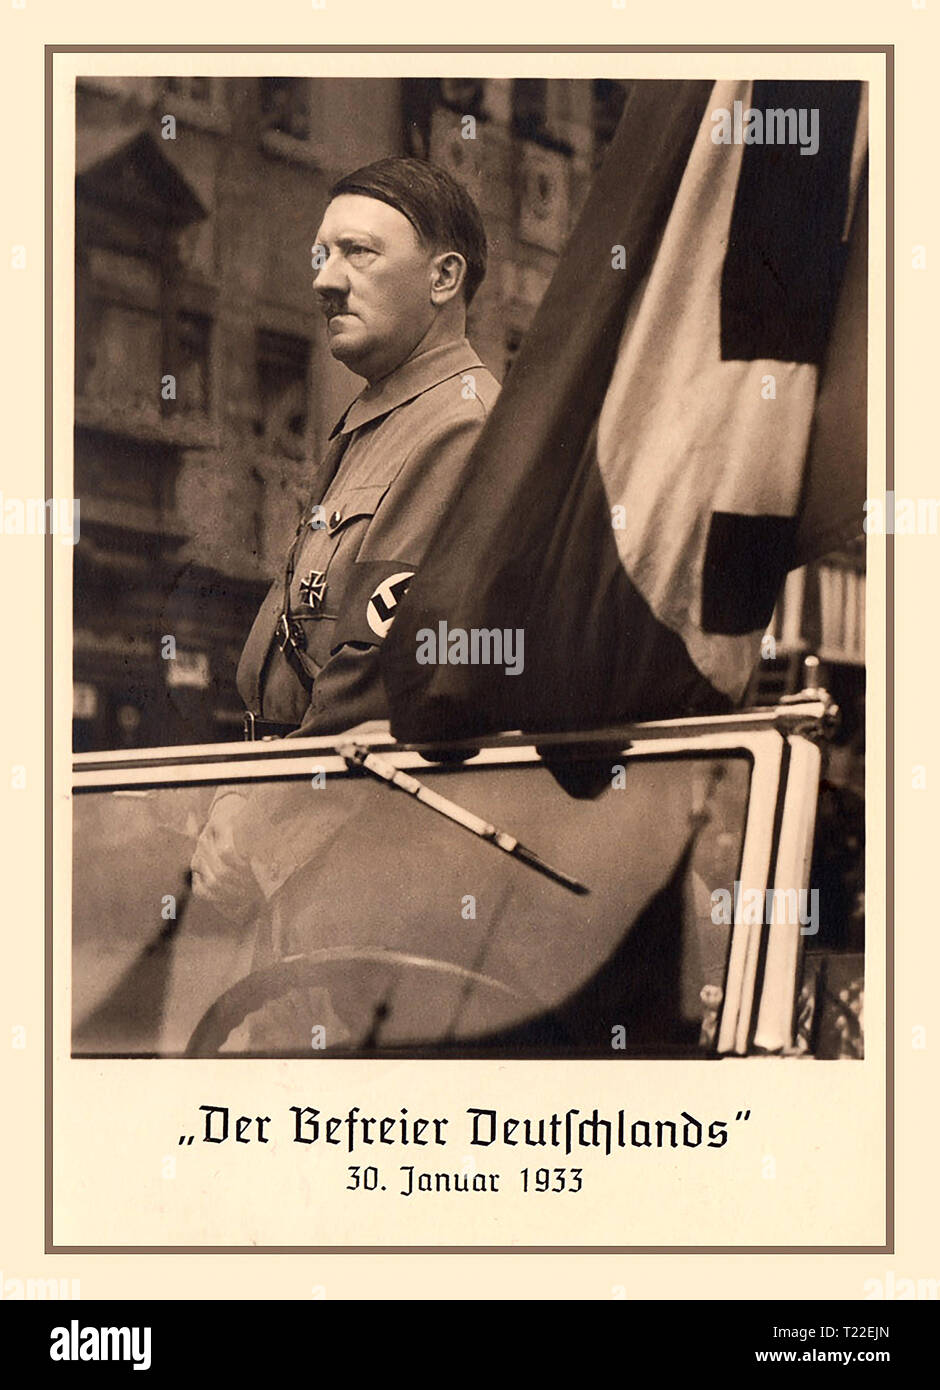 Adolf Hitler Jahrgang Januar 1933 Nazideutschland Propaganda Postkarte von Adolf Hitler, die in offenen Wagen mit Hakenkreuz Armbinde und Flagge" der Befreier Deutschlands" Neu ernannte Bundeskanzler von Deutschland Stockfoto